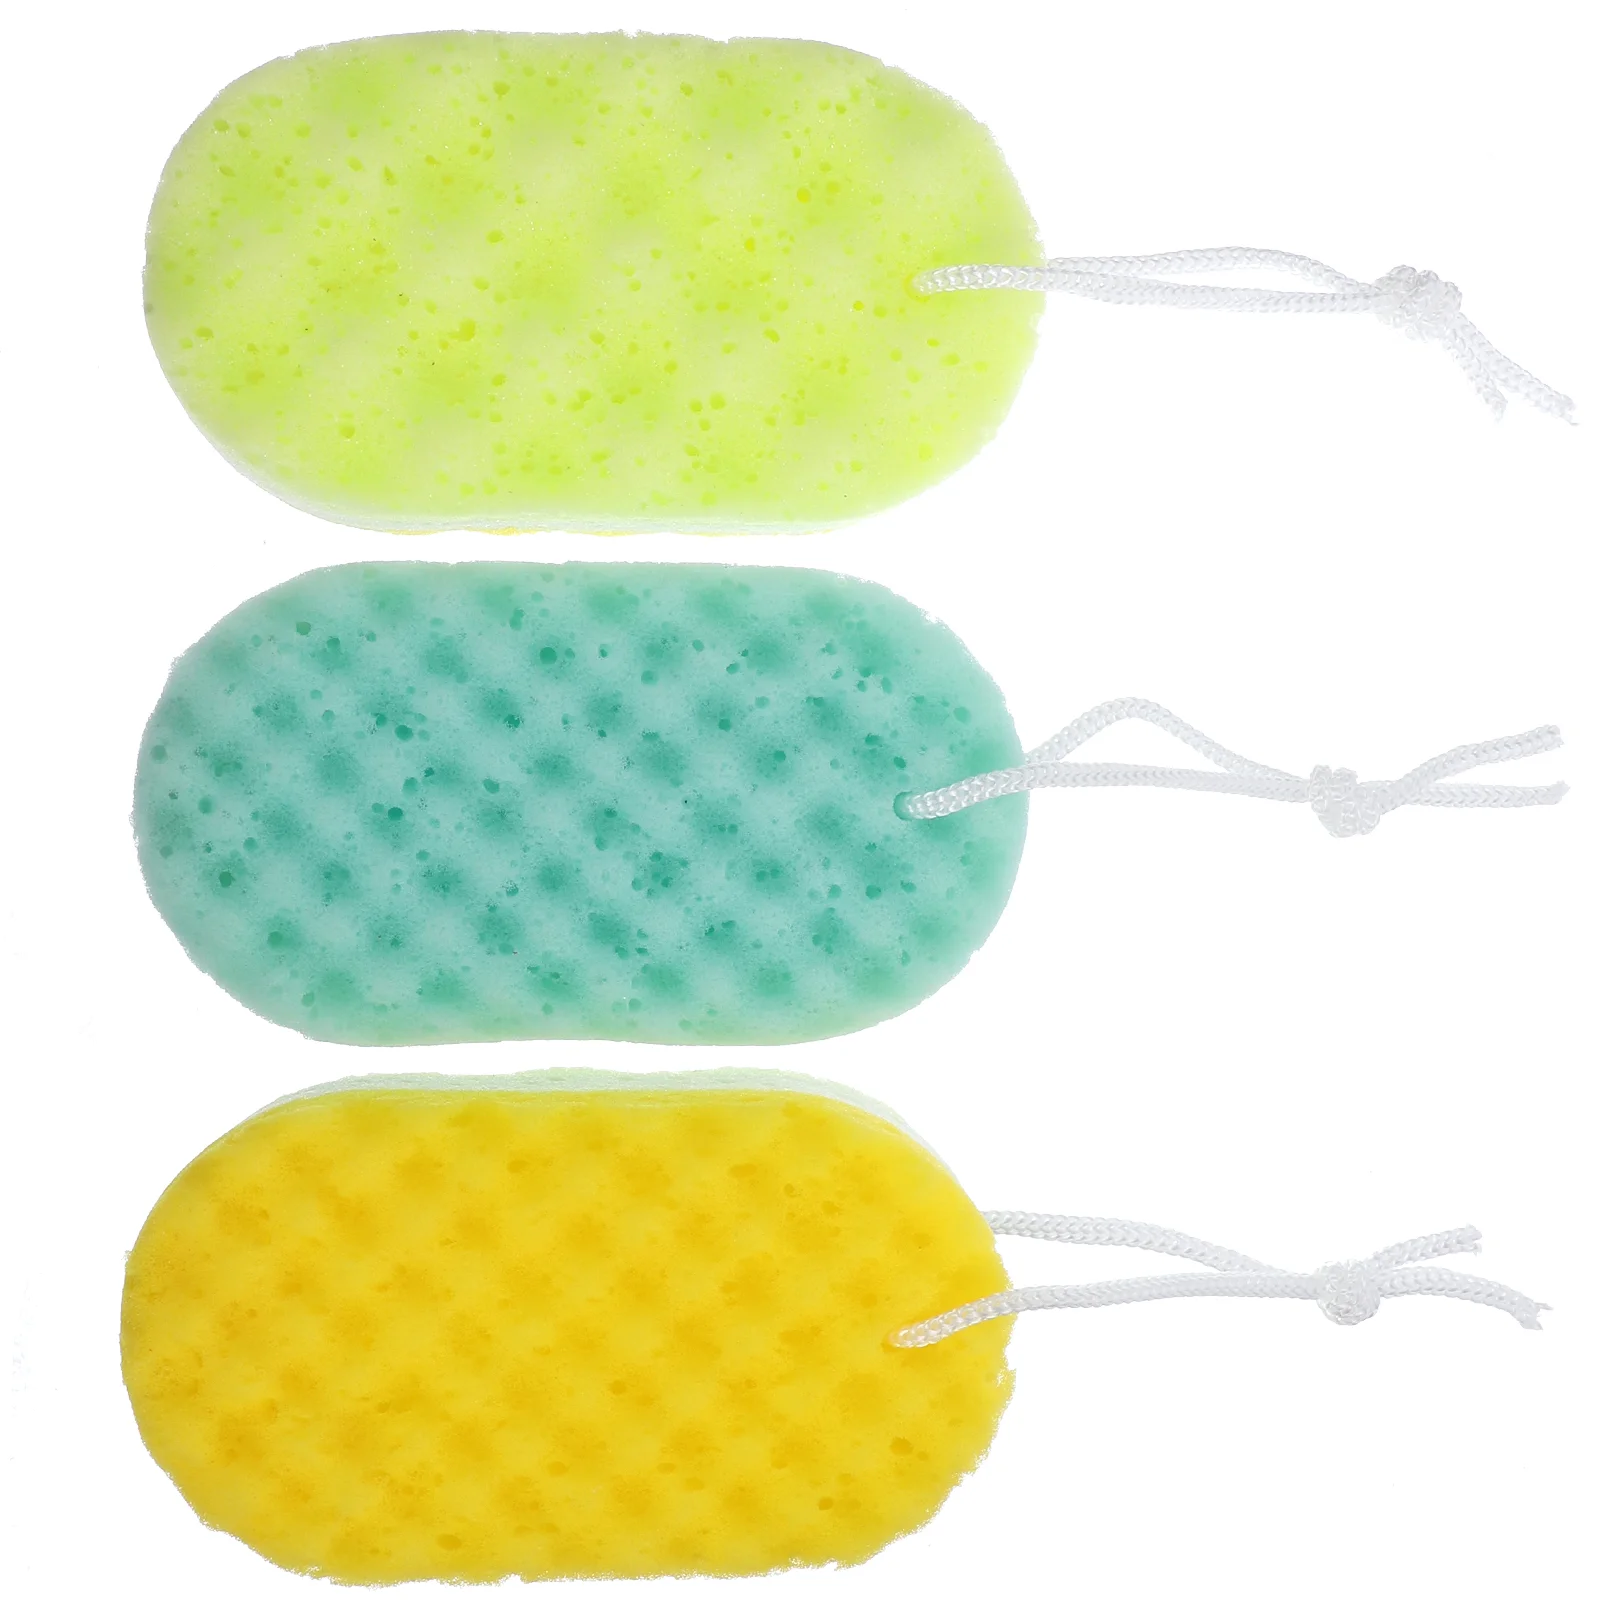 

3Pcs Bath Sponge Sponge Body Shower Rub Shower Sponge Scrubber Bath Brush Rubbing Towel for Toddler Infant Newborn Random